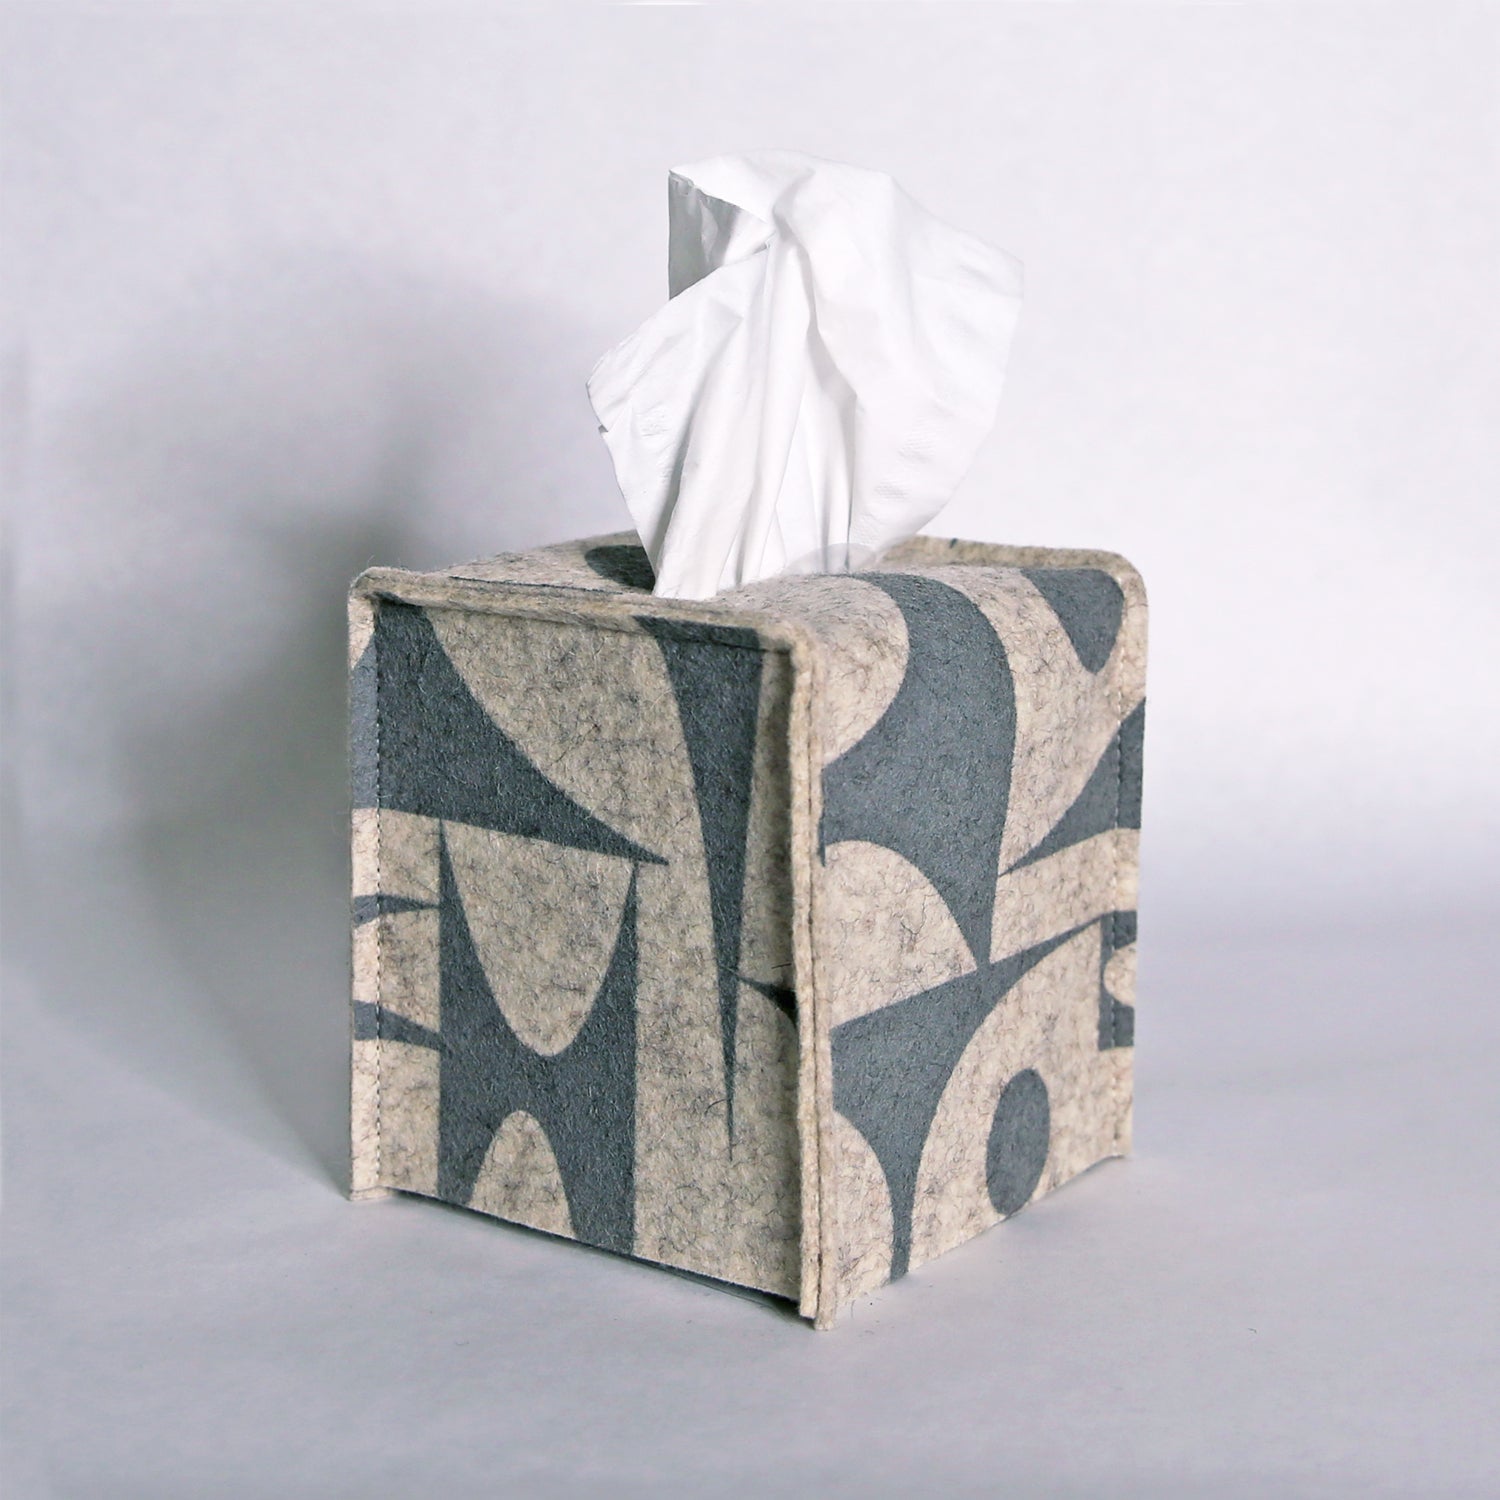 Square Tissue Box Cover - Bone